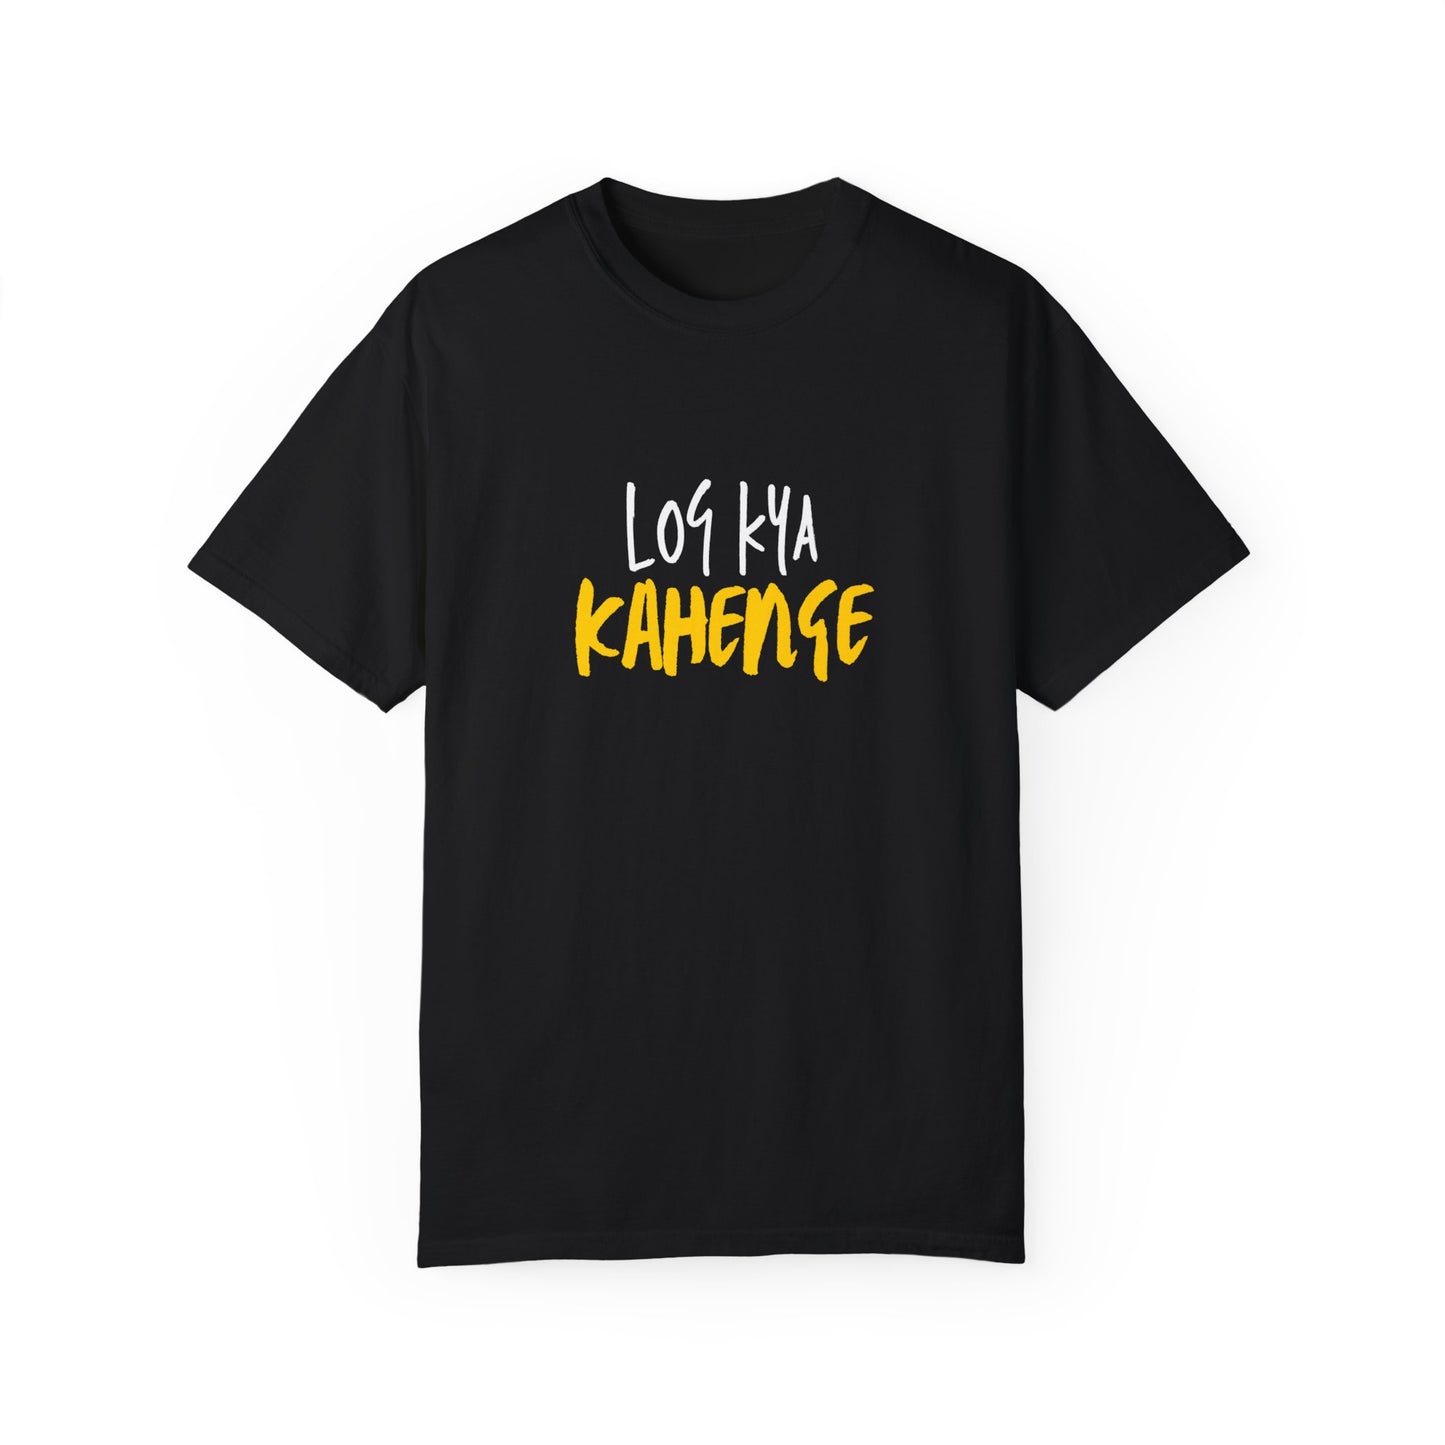 Log Kya Kahenge T-Shirt